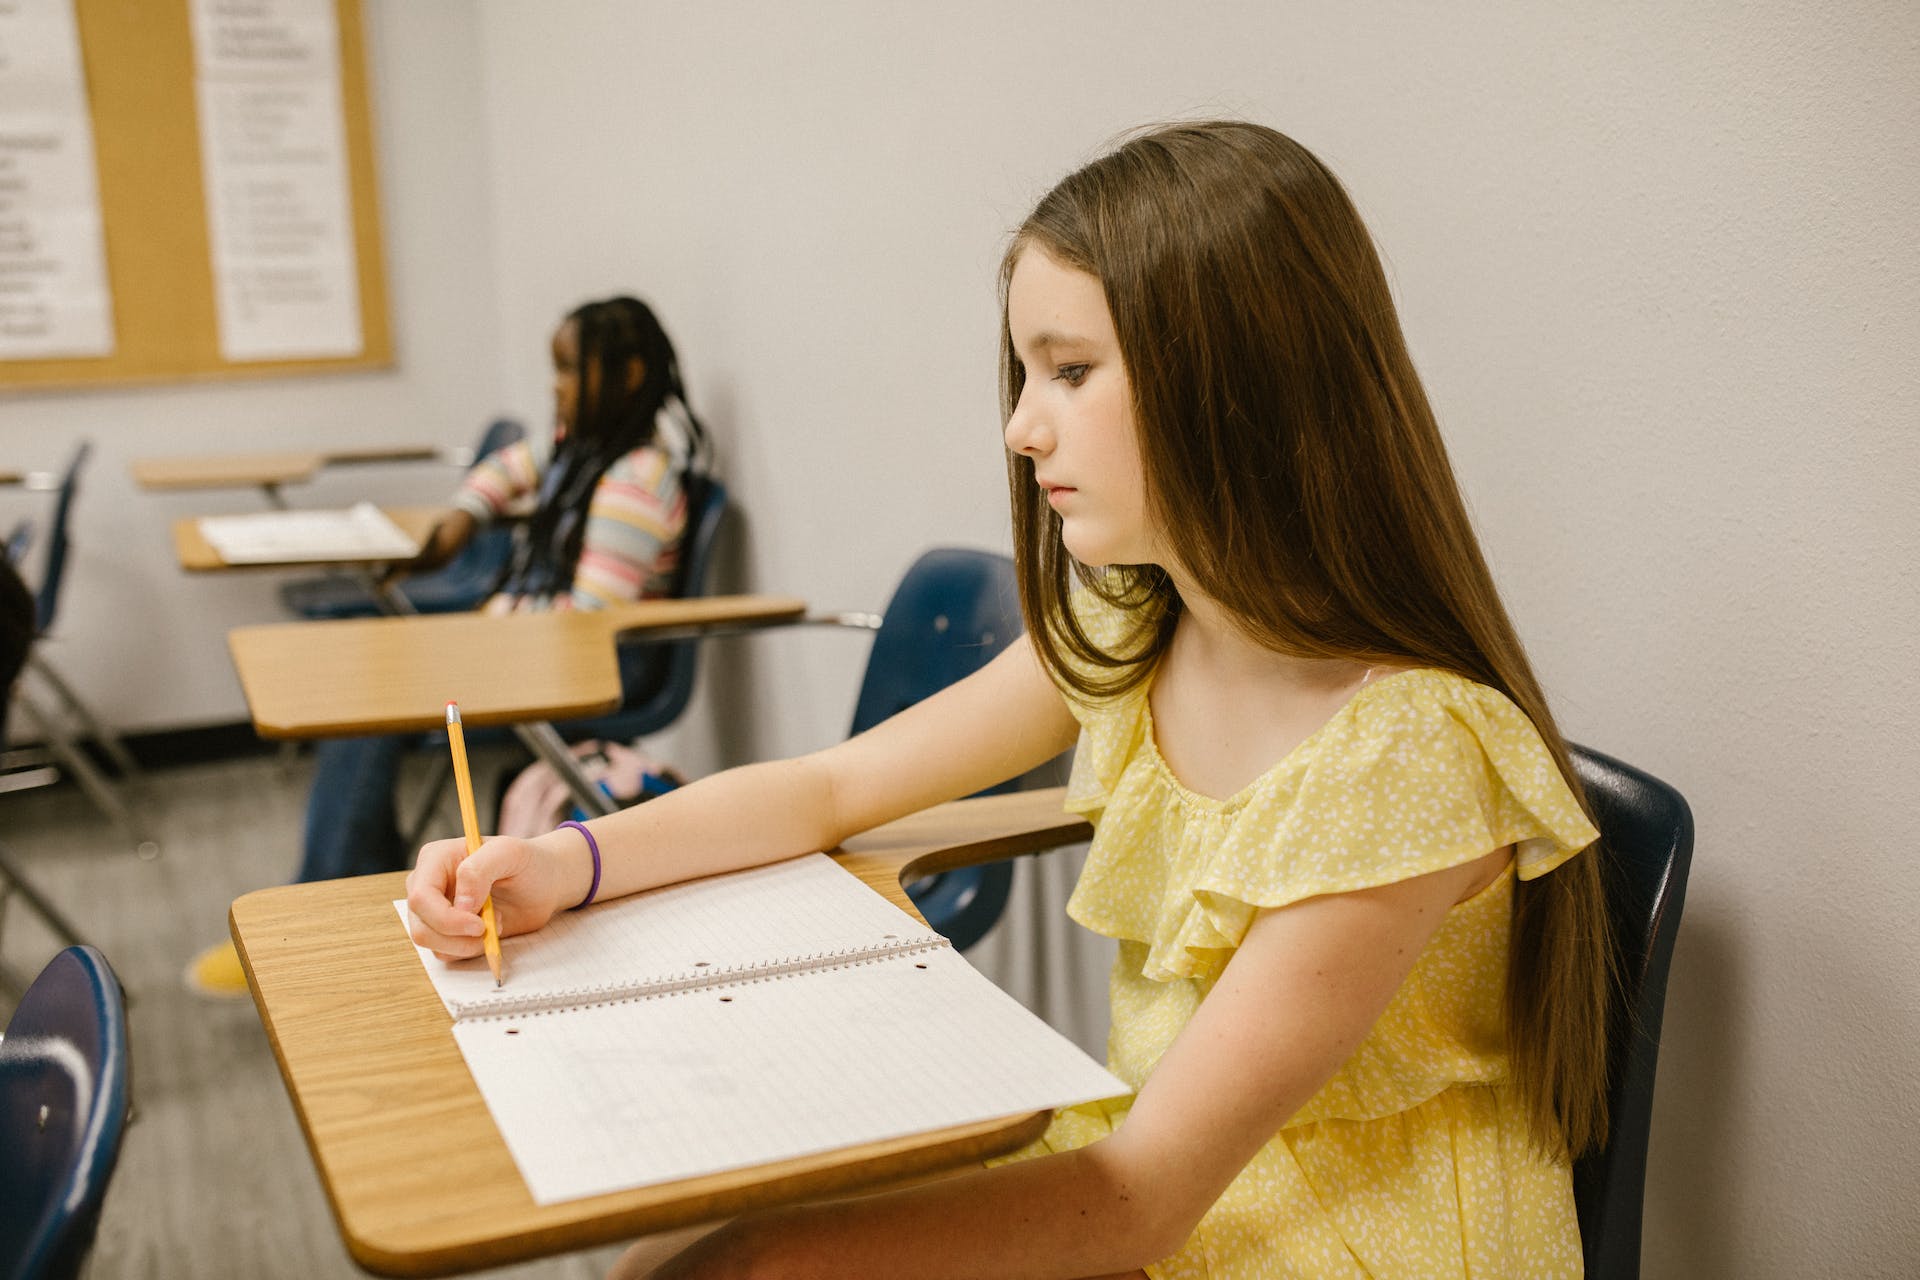 Une jeune fille solitaire assise dans une salle de classe | Source : Pexels